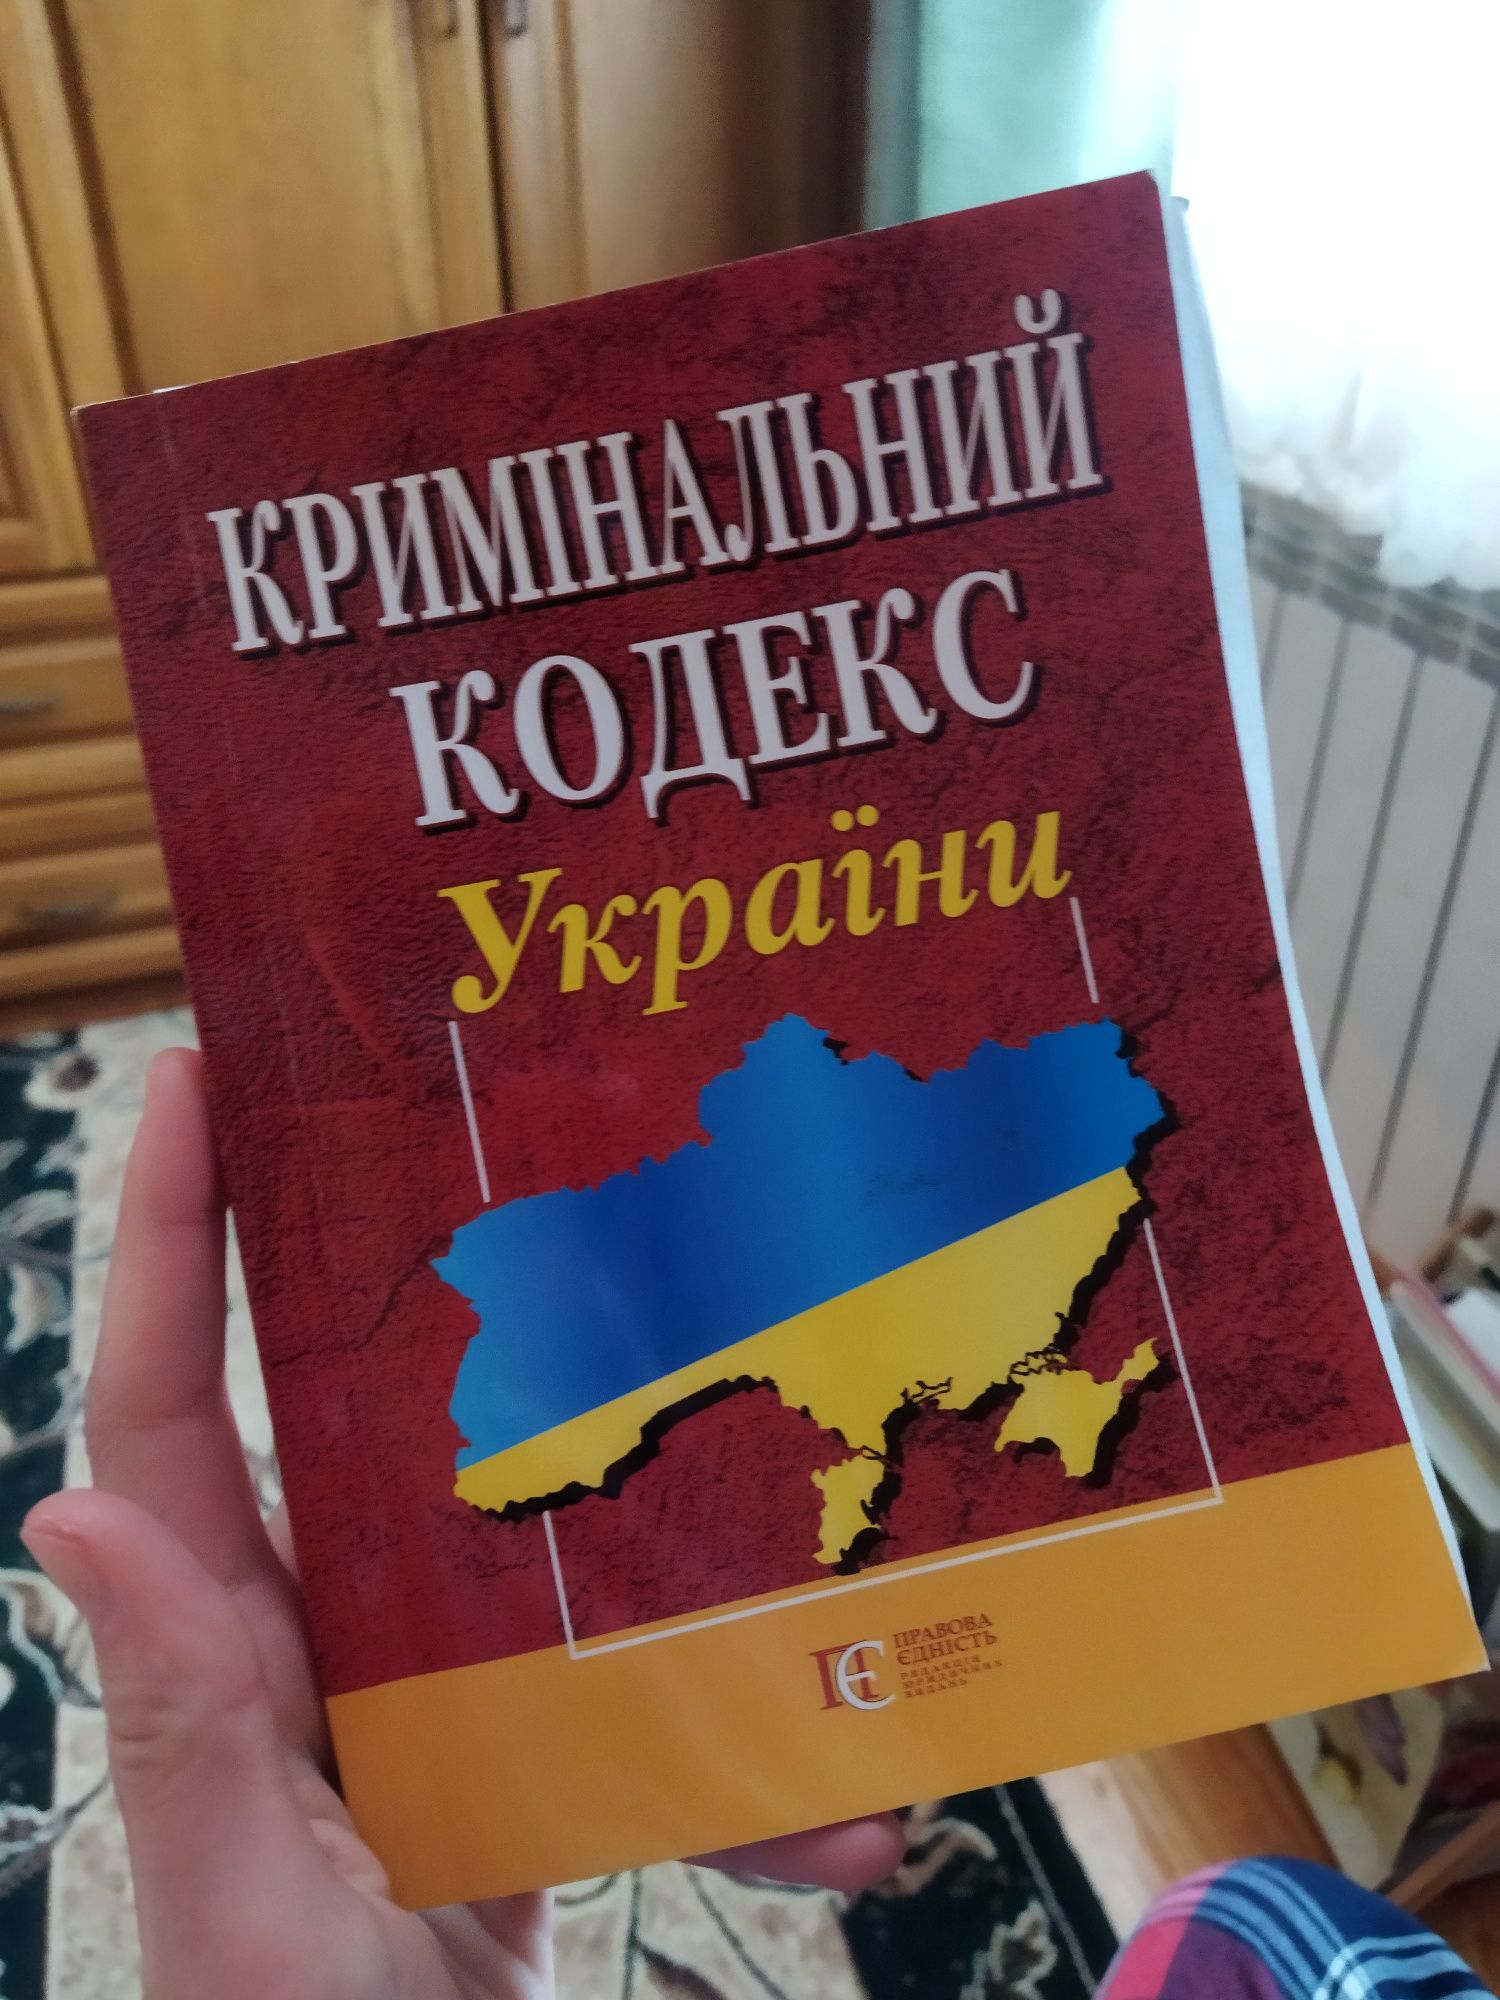 Кодекси України 2020/21